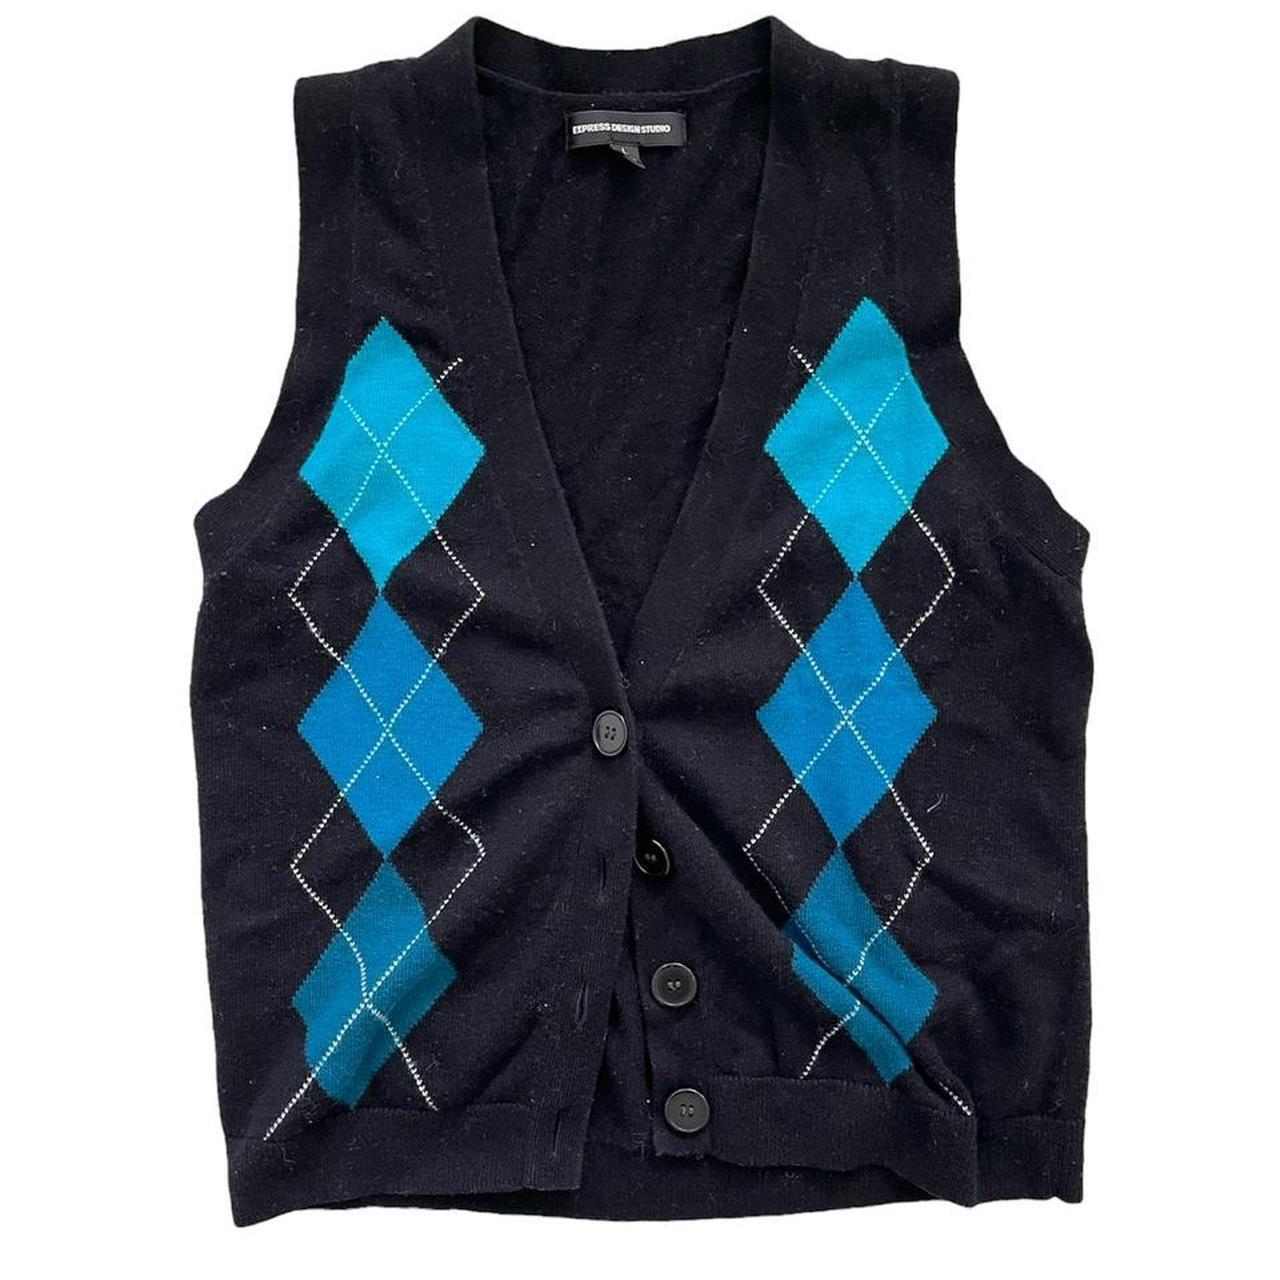 Button up black sweater vest (Size L, great... - Depop